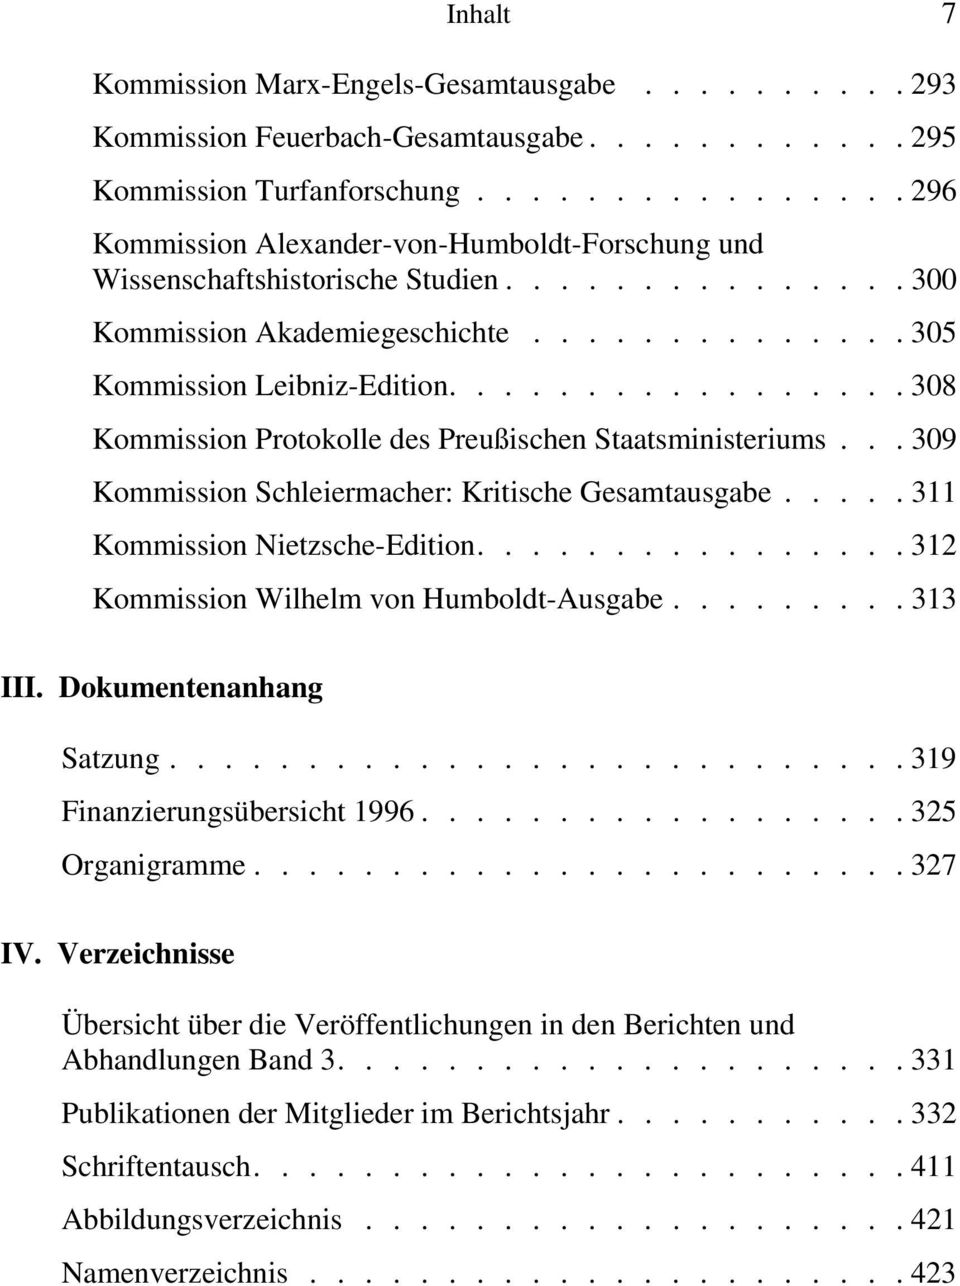 ................308 Kommission Protokolle des Preußischen Staatsministeriums... 309 Kommission Schleiermacher: Kritische Gesamtausgabe.....311 Kommission Nietzsche-Edition.